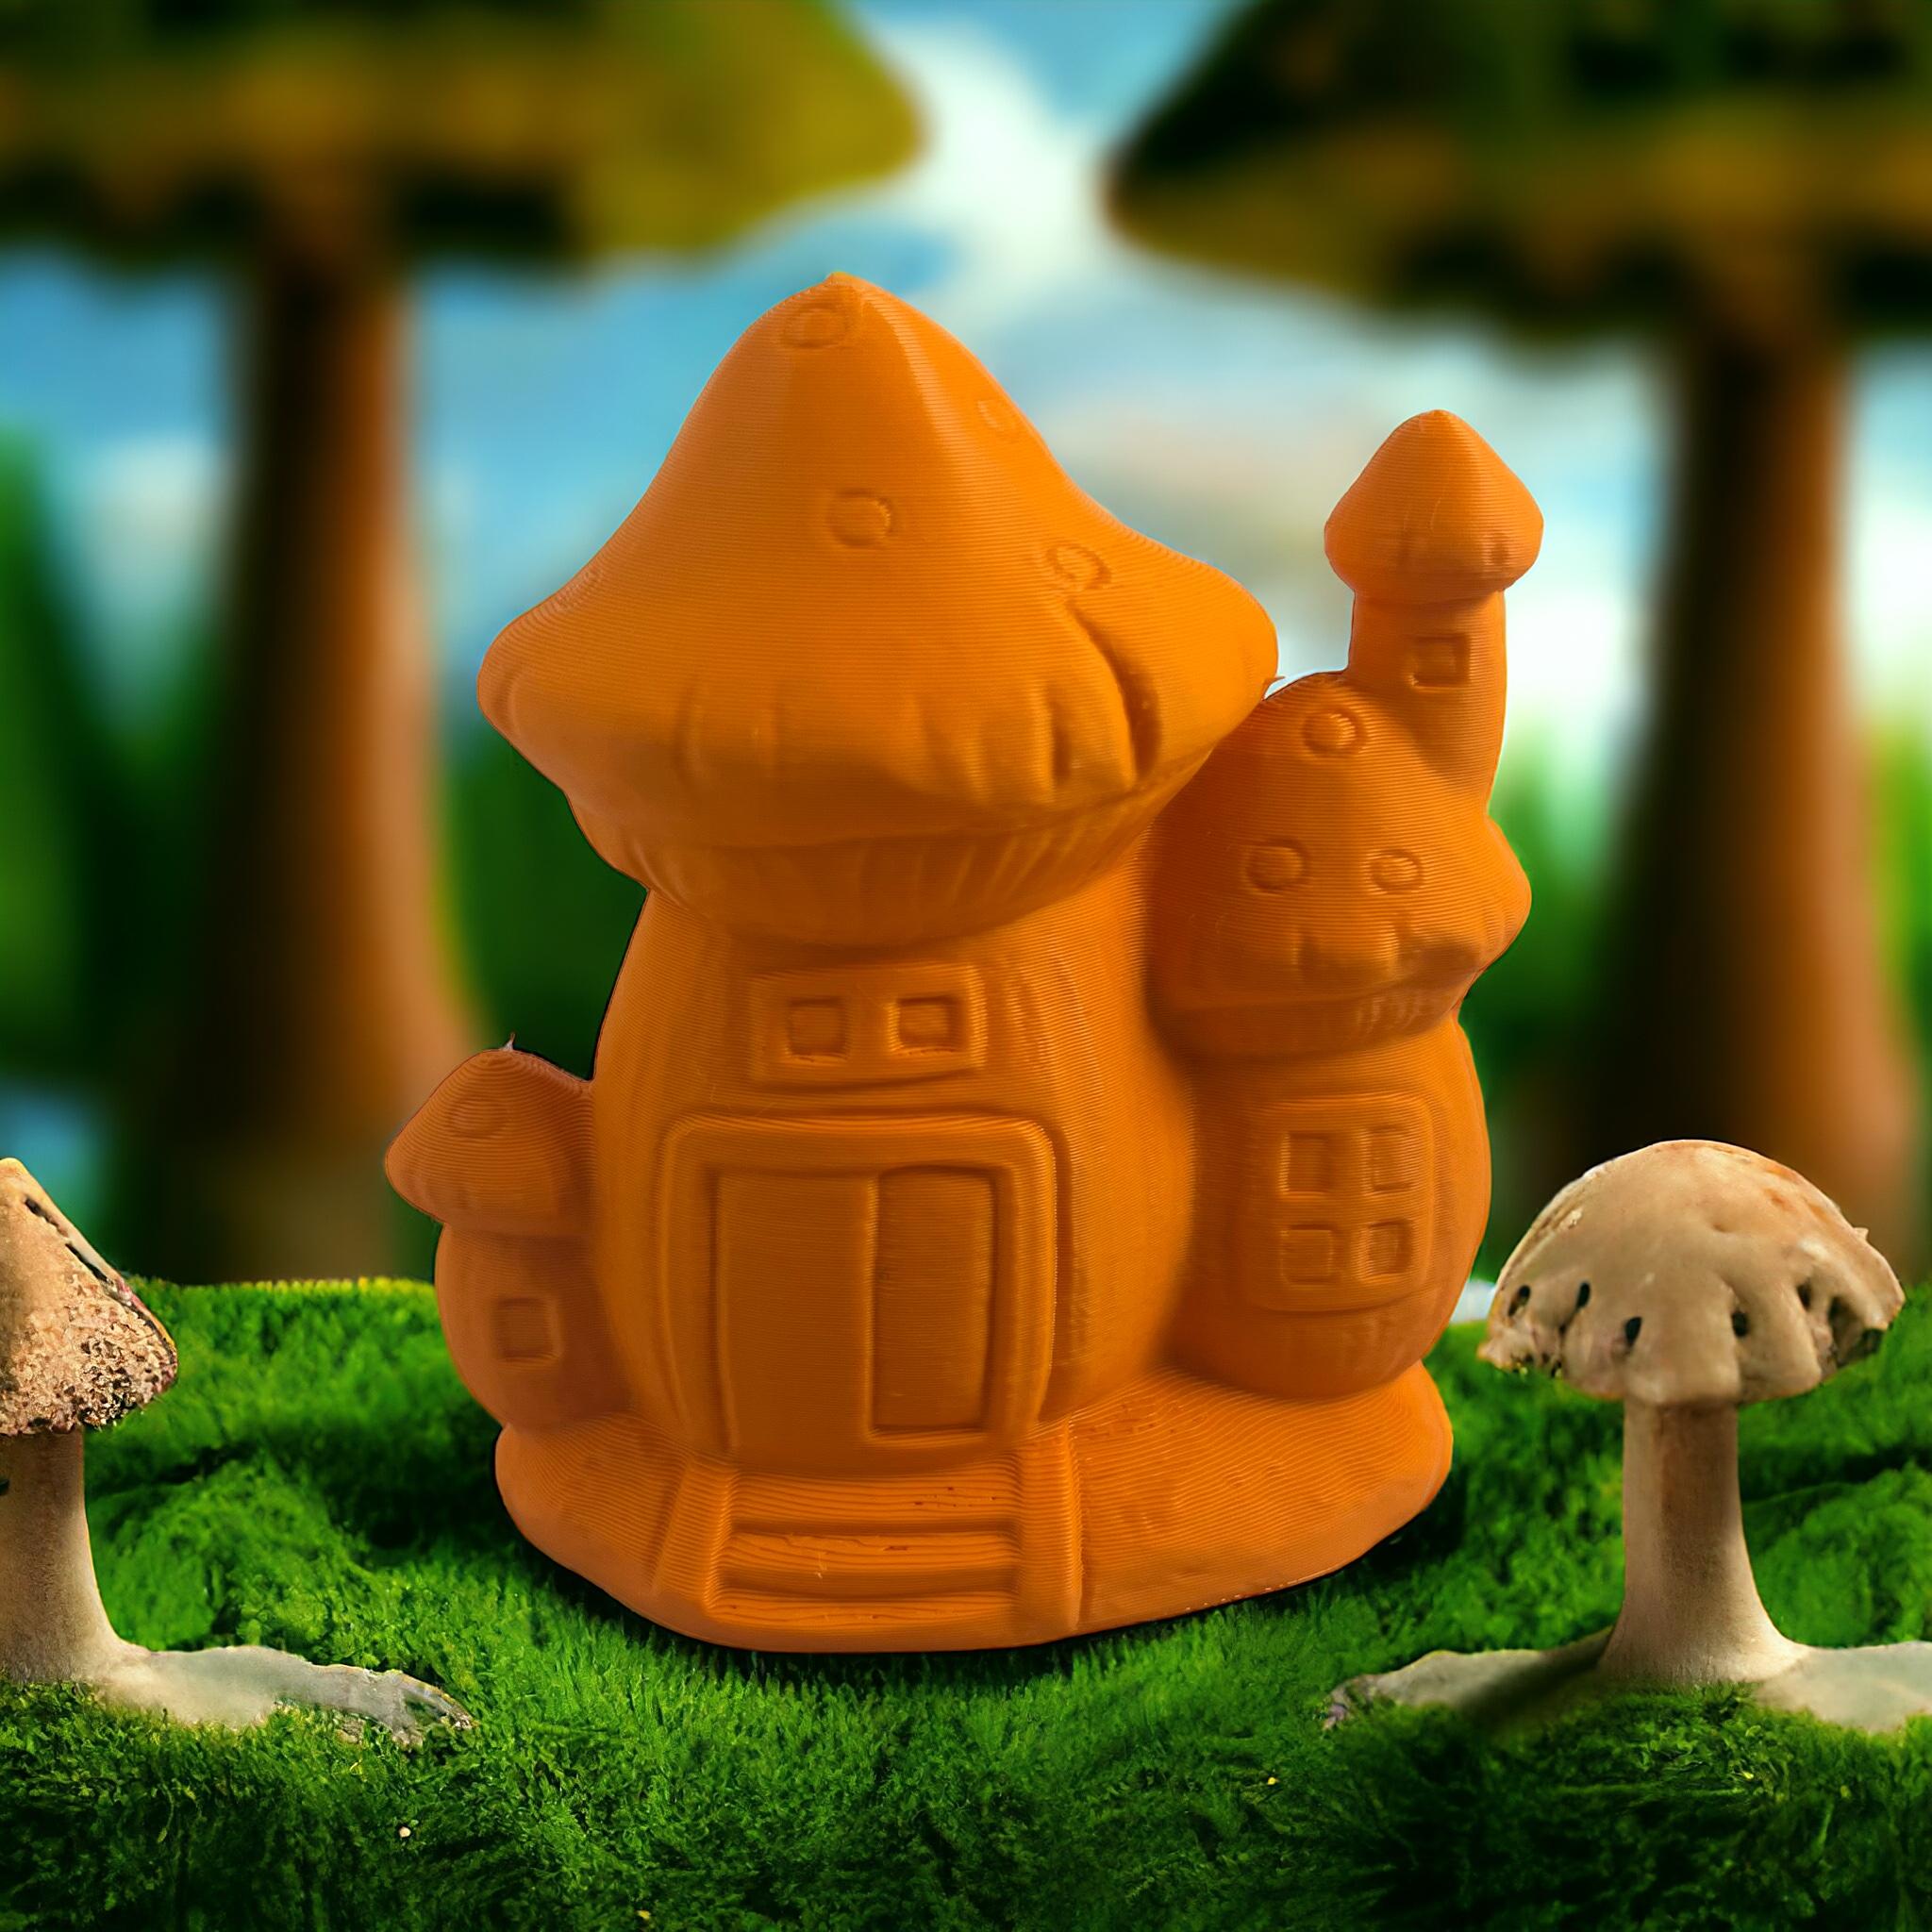 Mushroom house 3d model